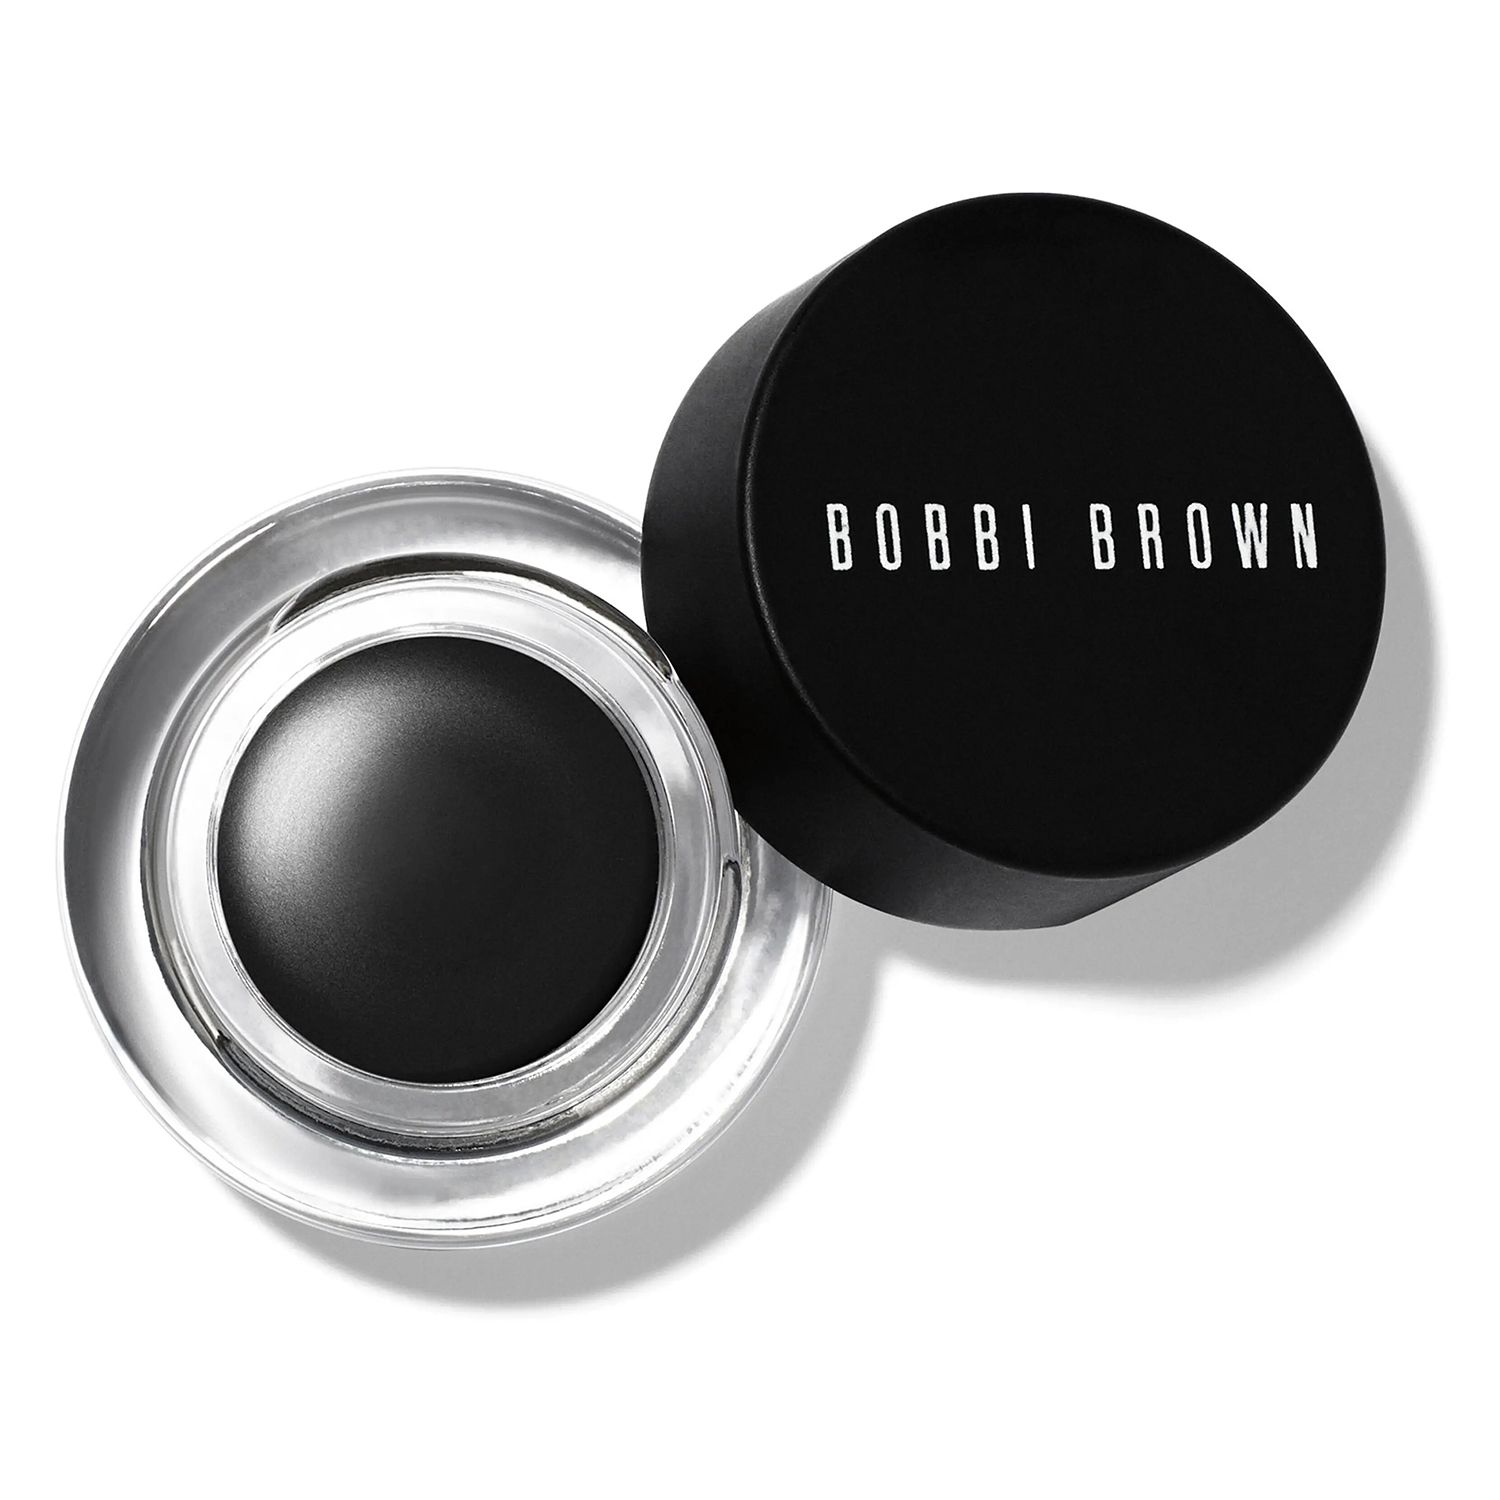 Bobbi Brown Make-up